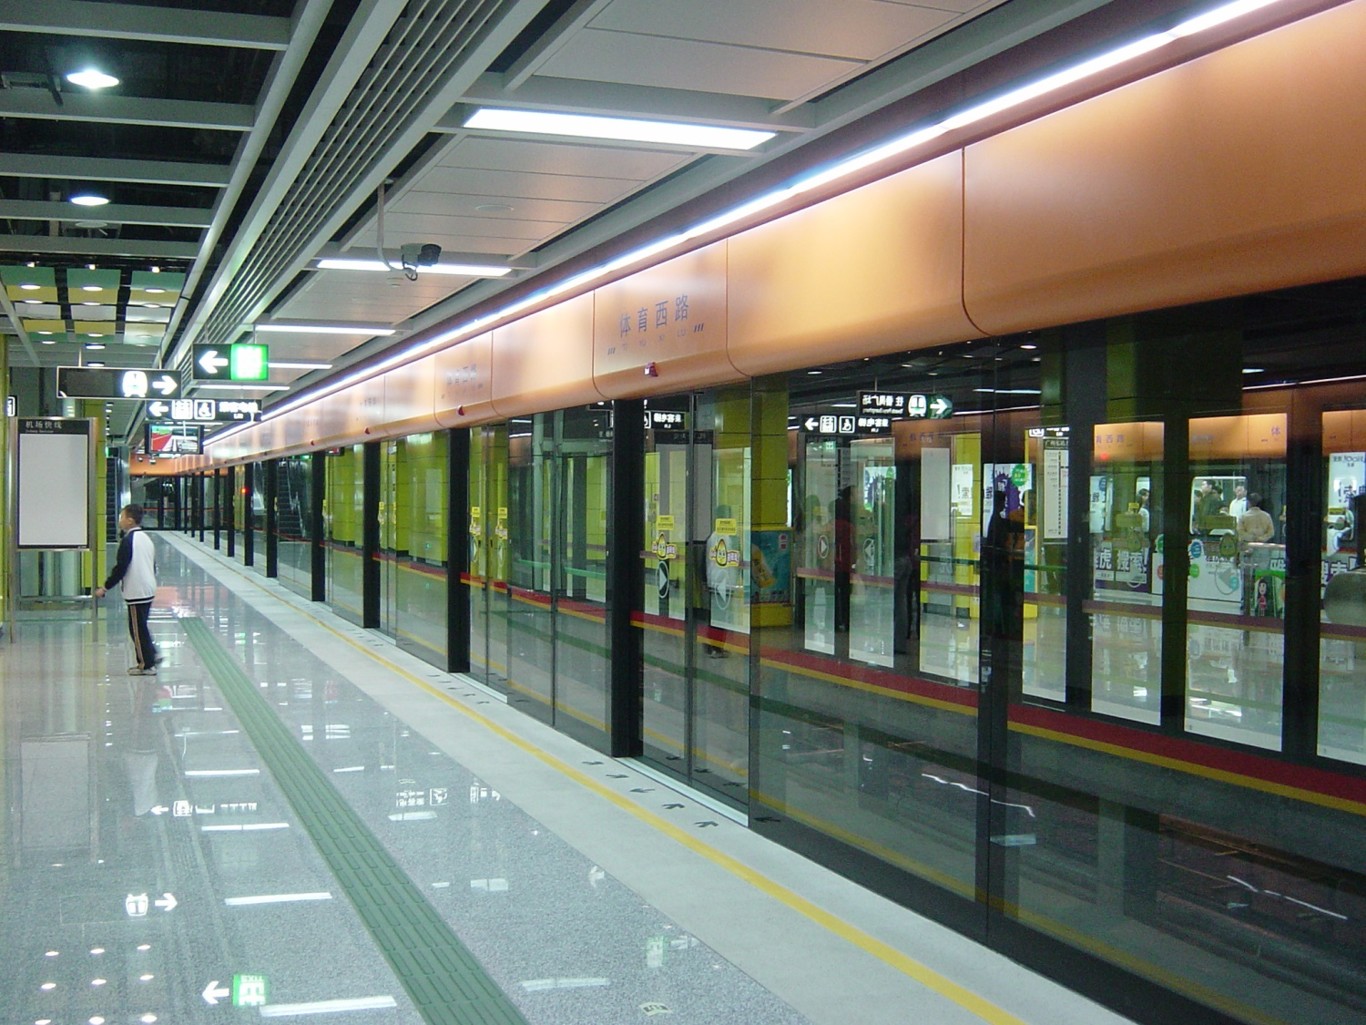 megaconstrucciones chinas - metro subterráneo